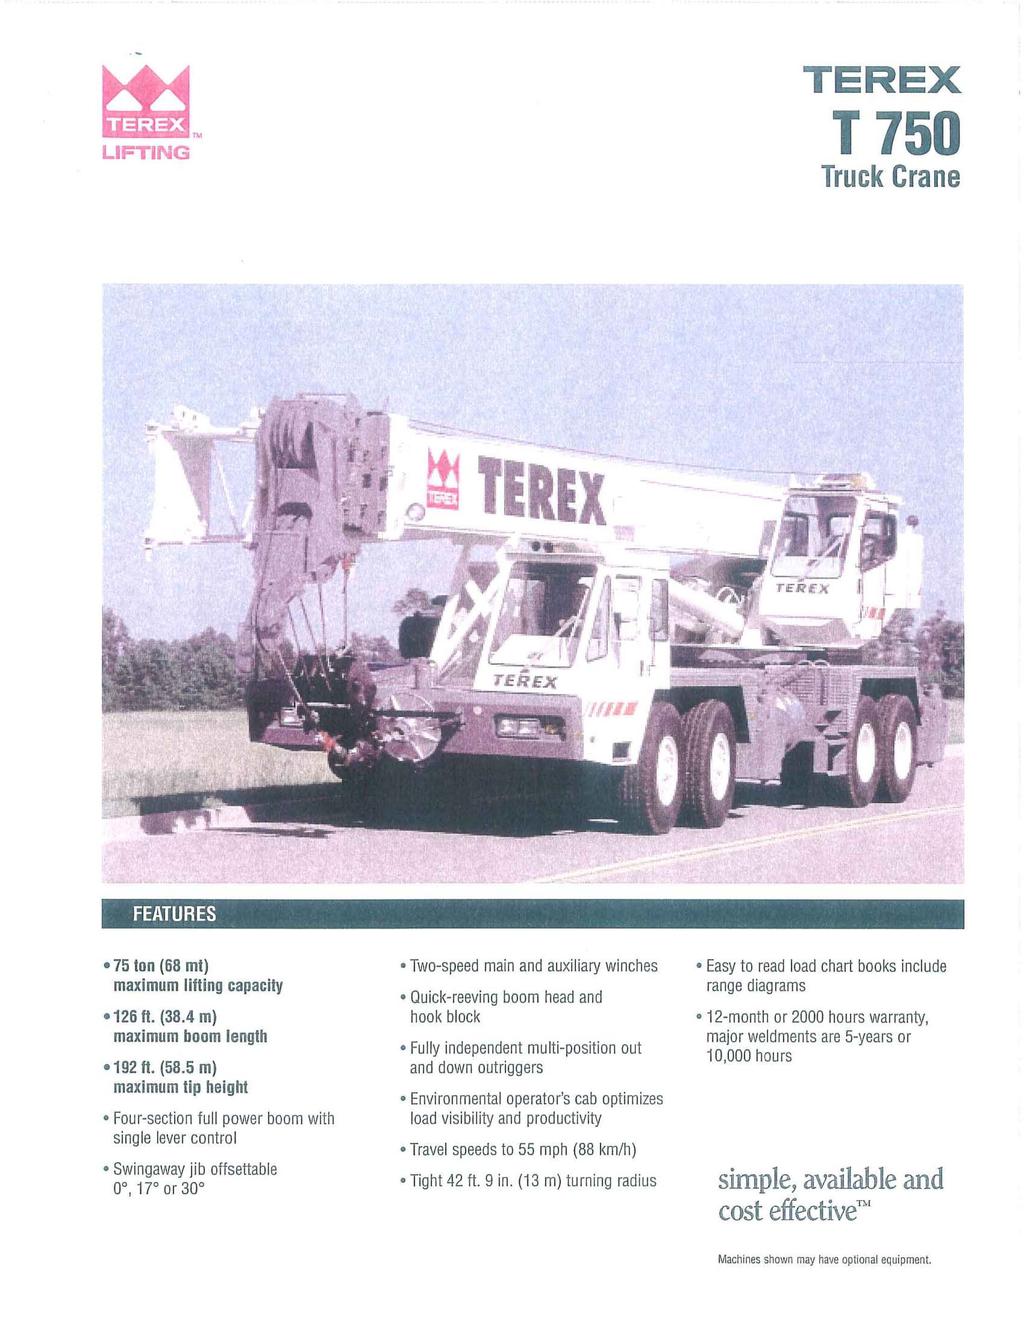 LIFTING TEREX T750 Truck Crane FEATURES - 75 ton (68 mt) maximum lifting capacity -126 fl. (38.4 m) maximum boom length -192 fl. (58.